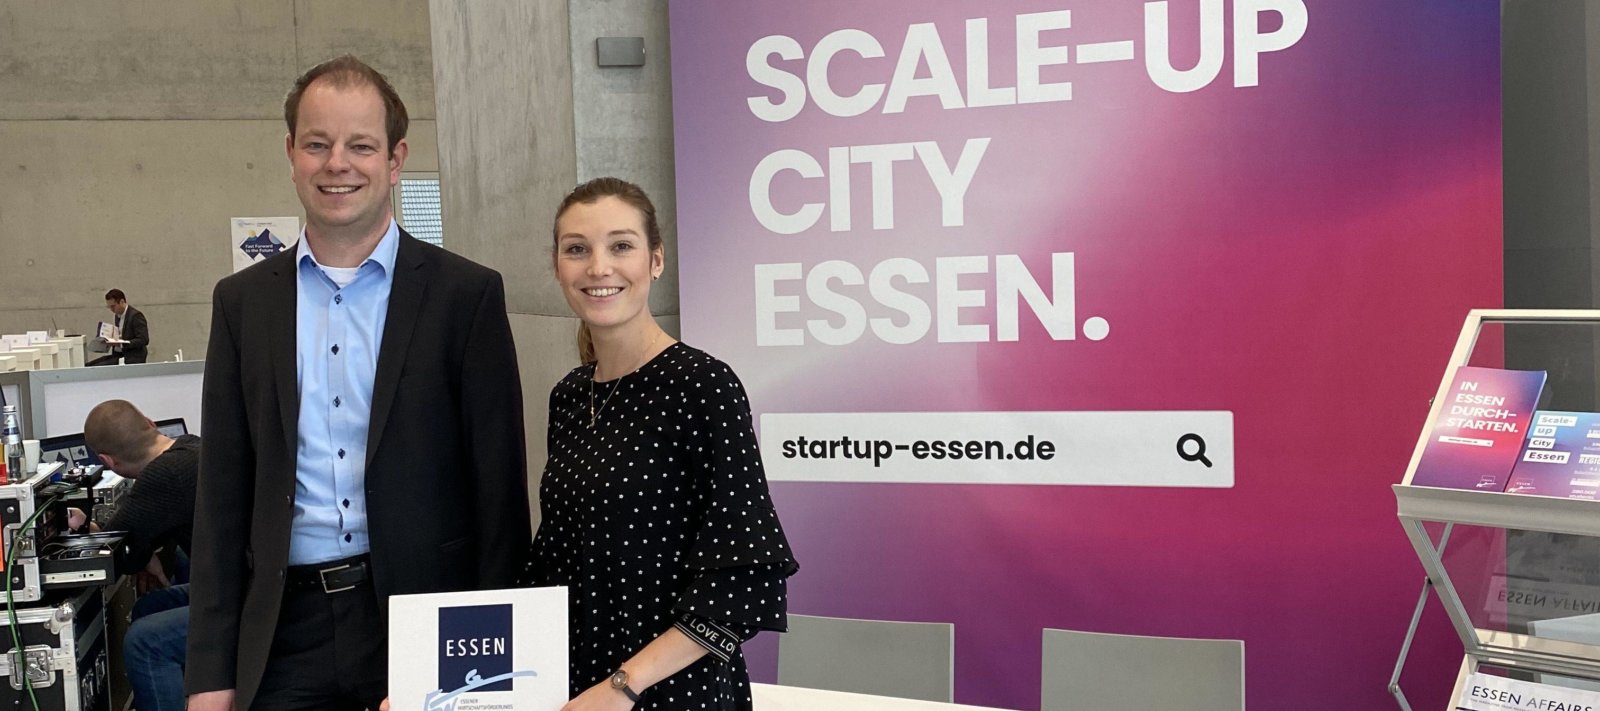 Startup-Essen – Tech Tour Contest Final 2019 lockt über 300 Start-ups und Investoren nach Essen